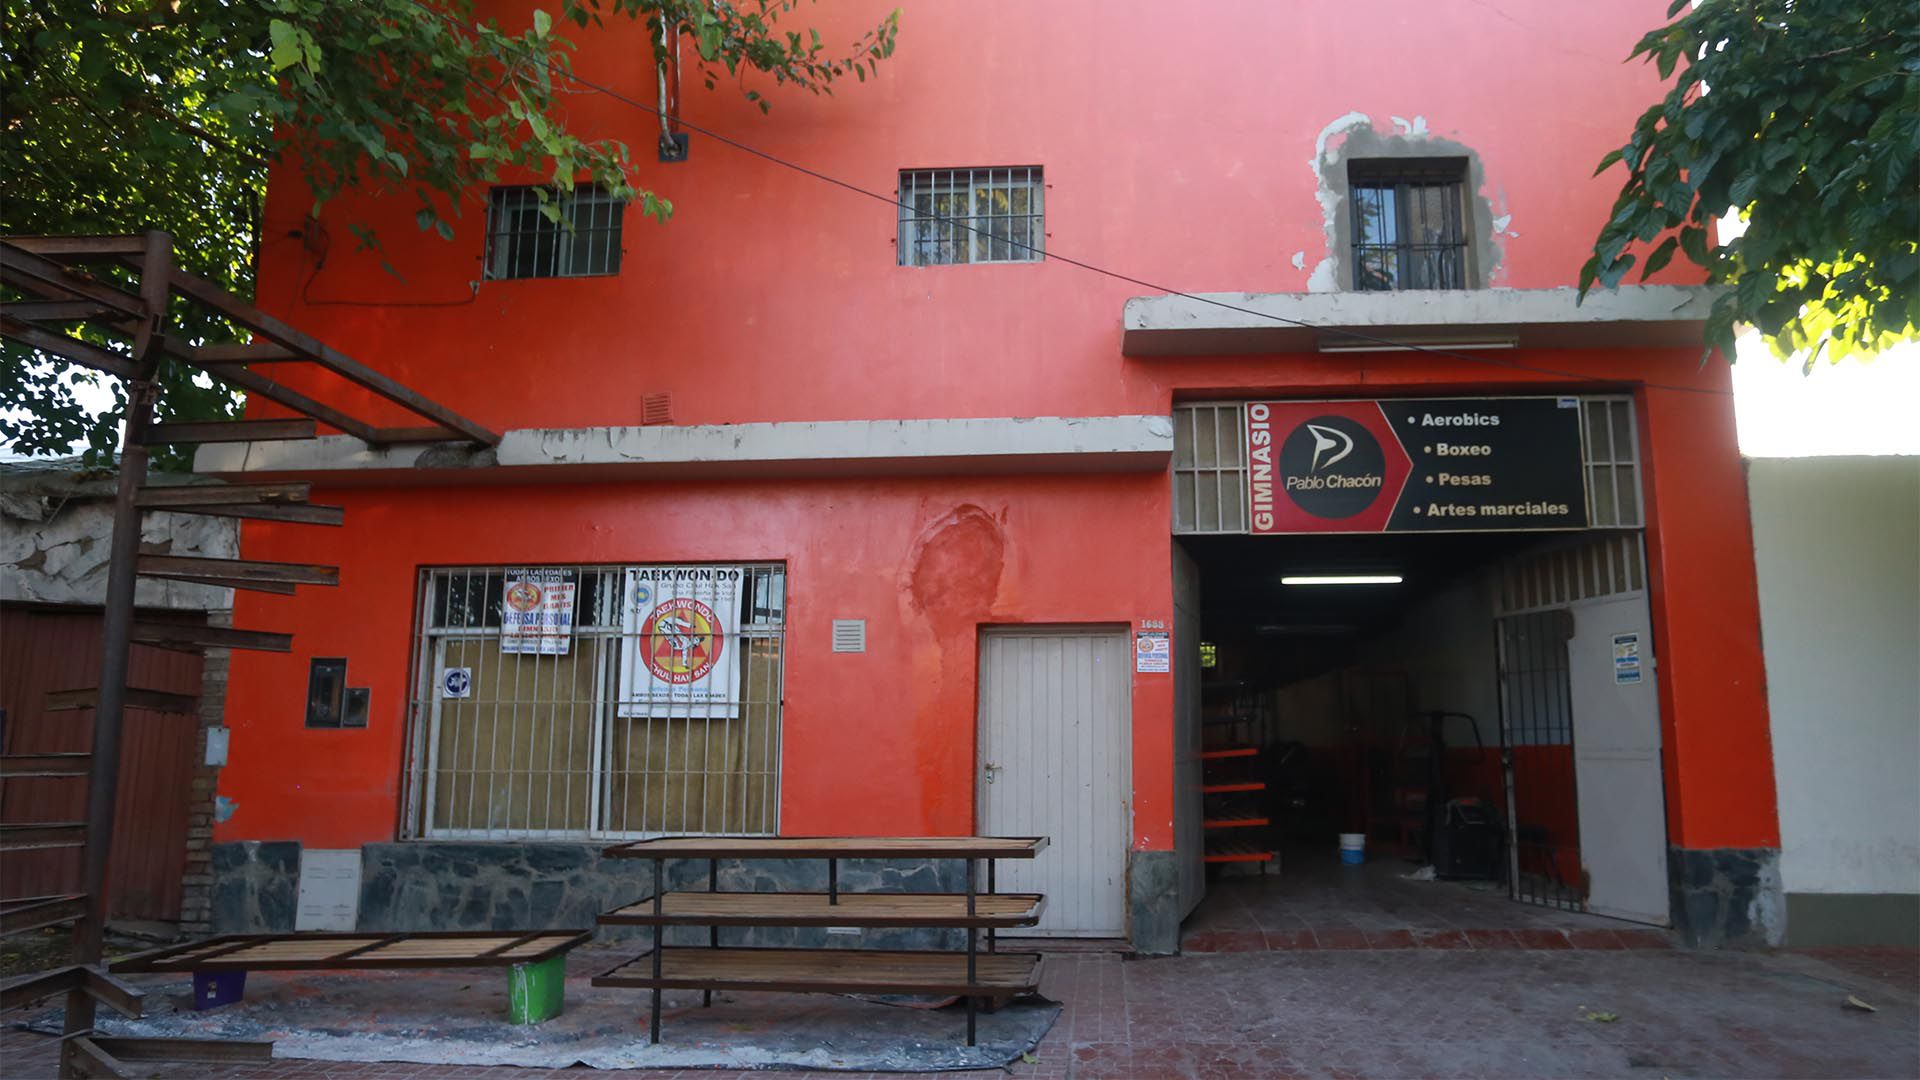 La entrada del gimnasio Pablo Chacón, situado en la ciduad de Las Heras, Mendoza (Agustín Moya)